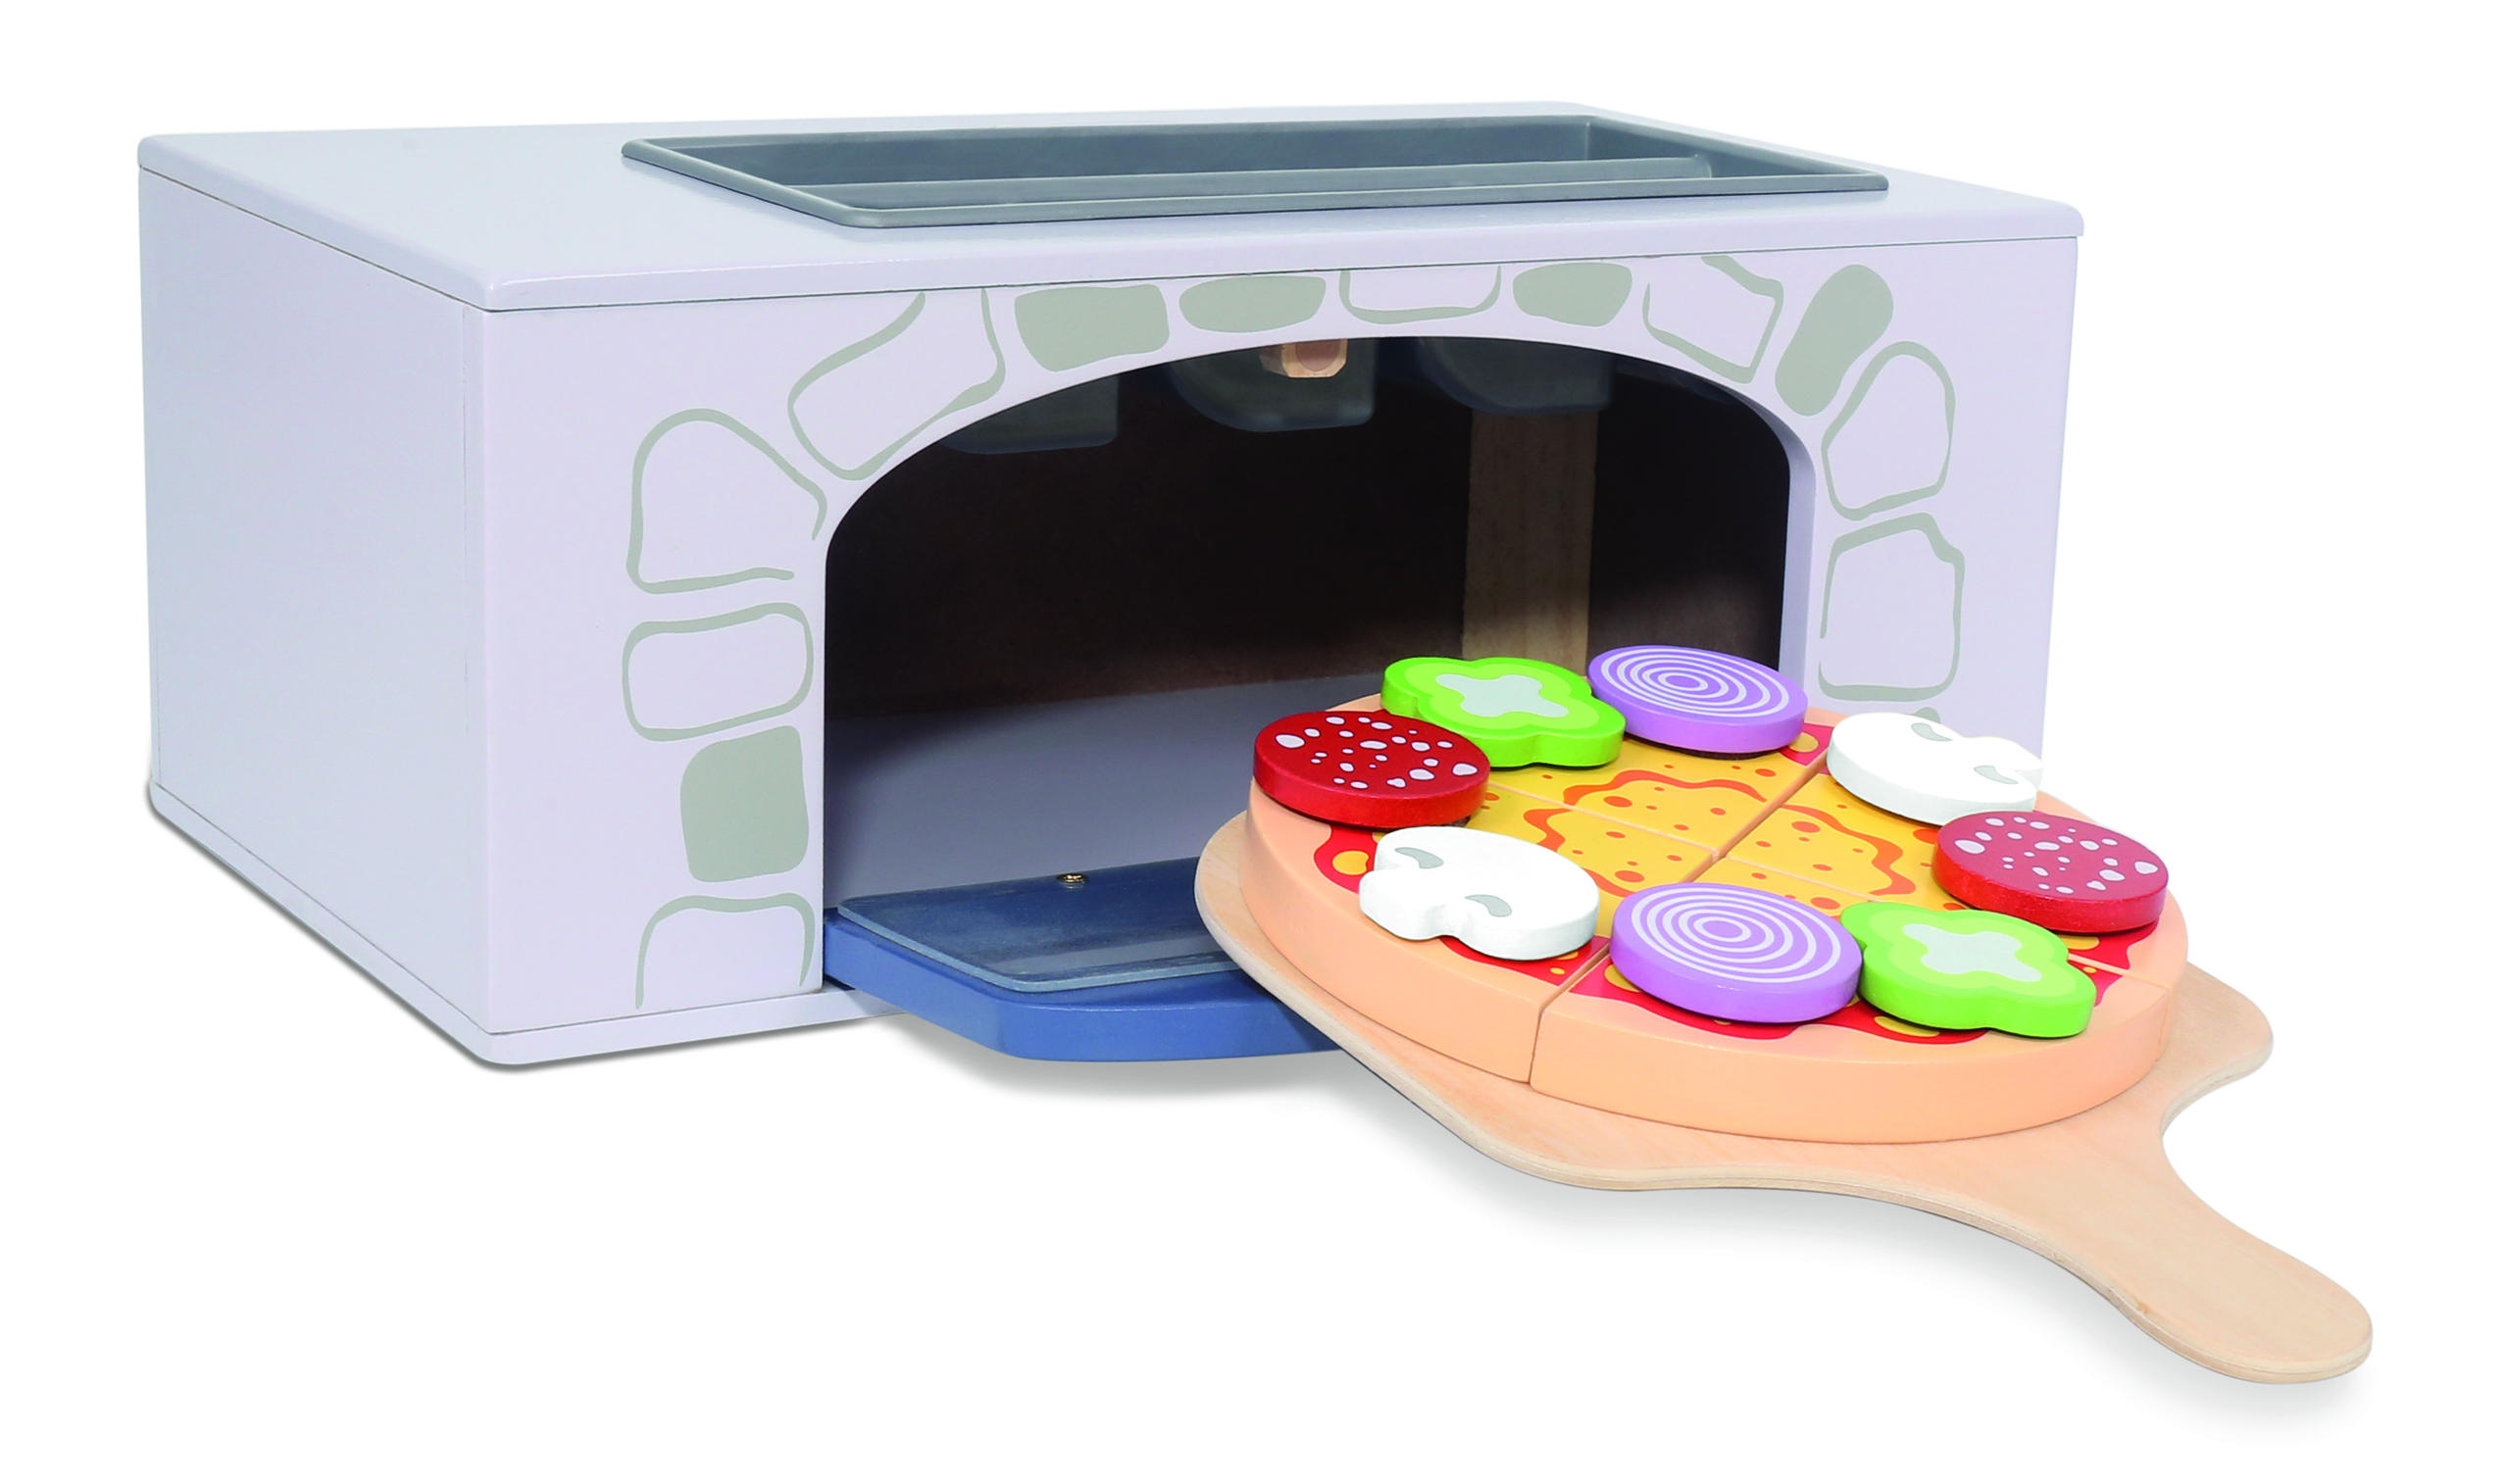 Jucarie intercativa pentru copii “Cuptor Pizza” cu accesorii, Material Lemn, Varsta+3 ani, Smartic®, multicolor [10]